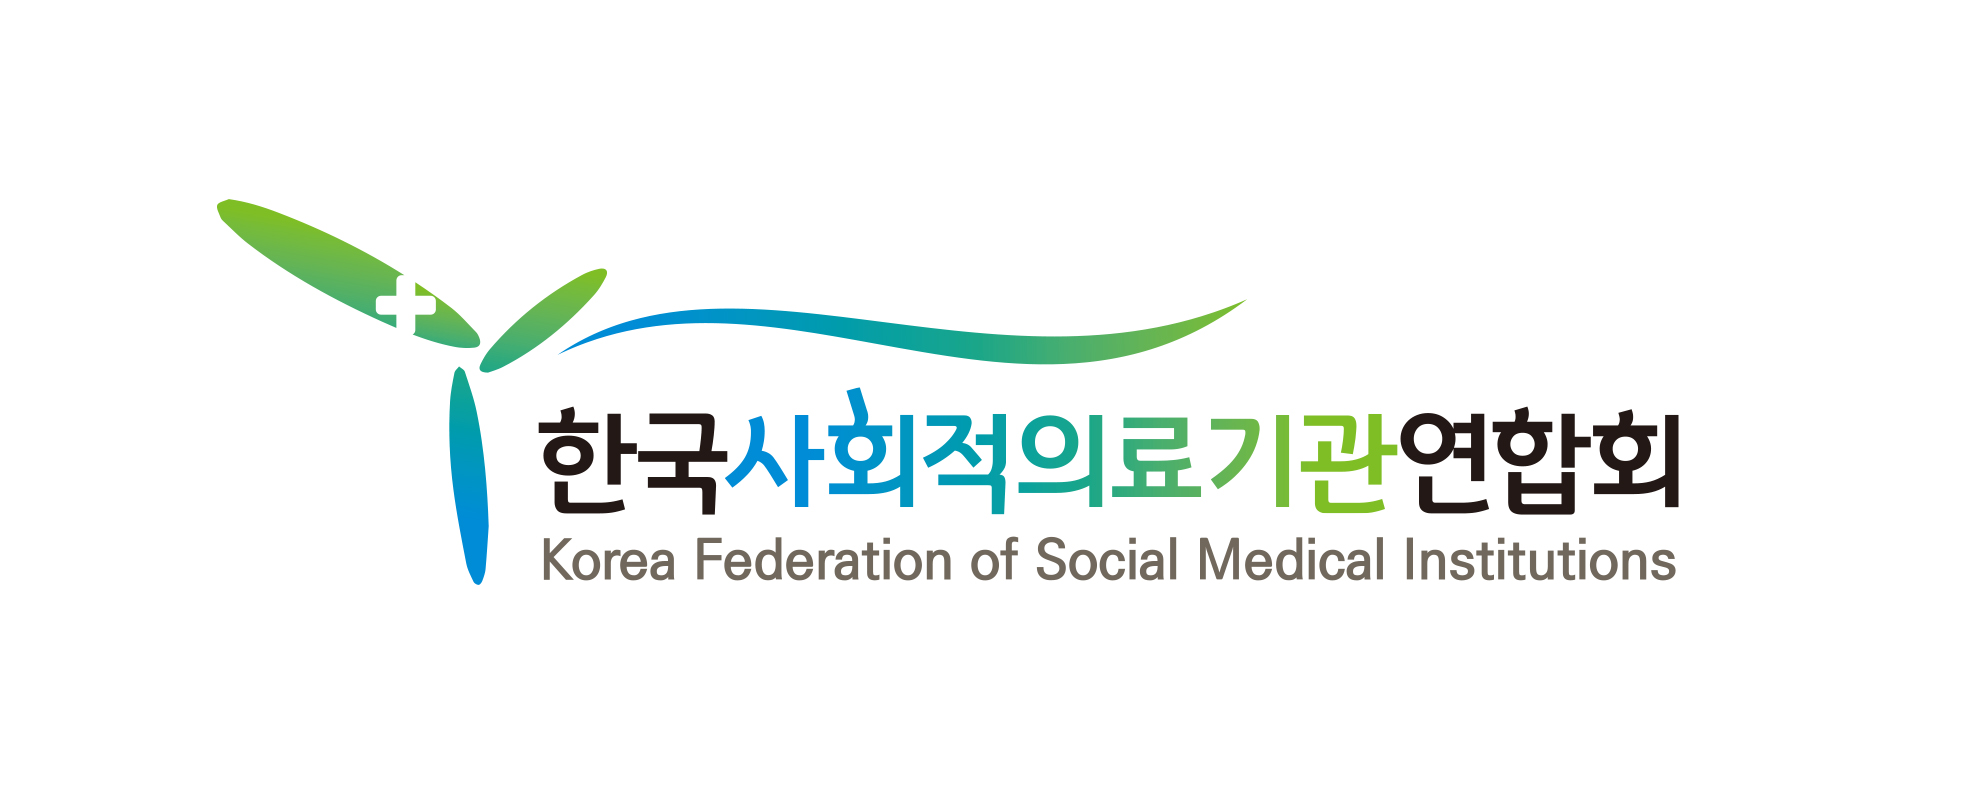 한국사회적의료기관연합회